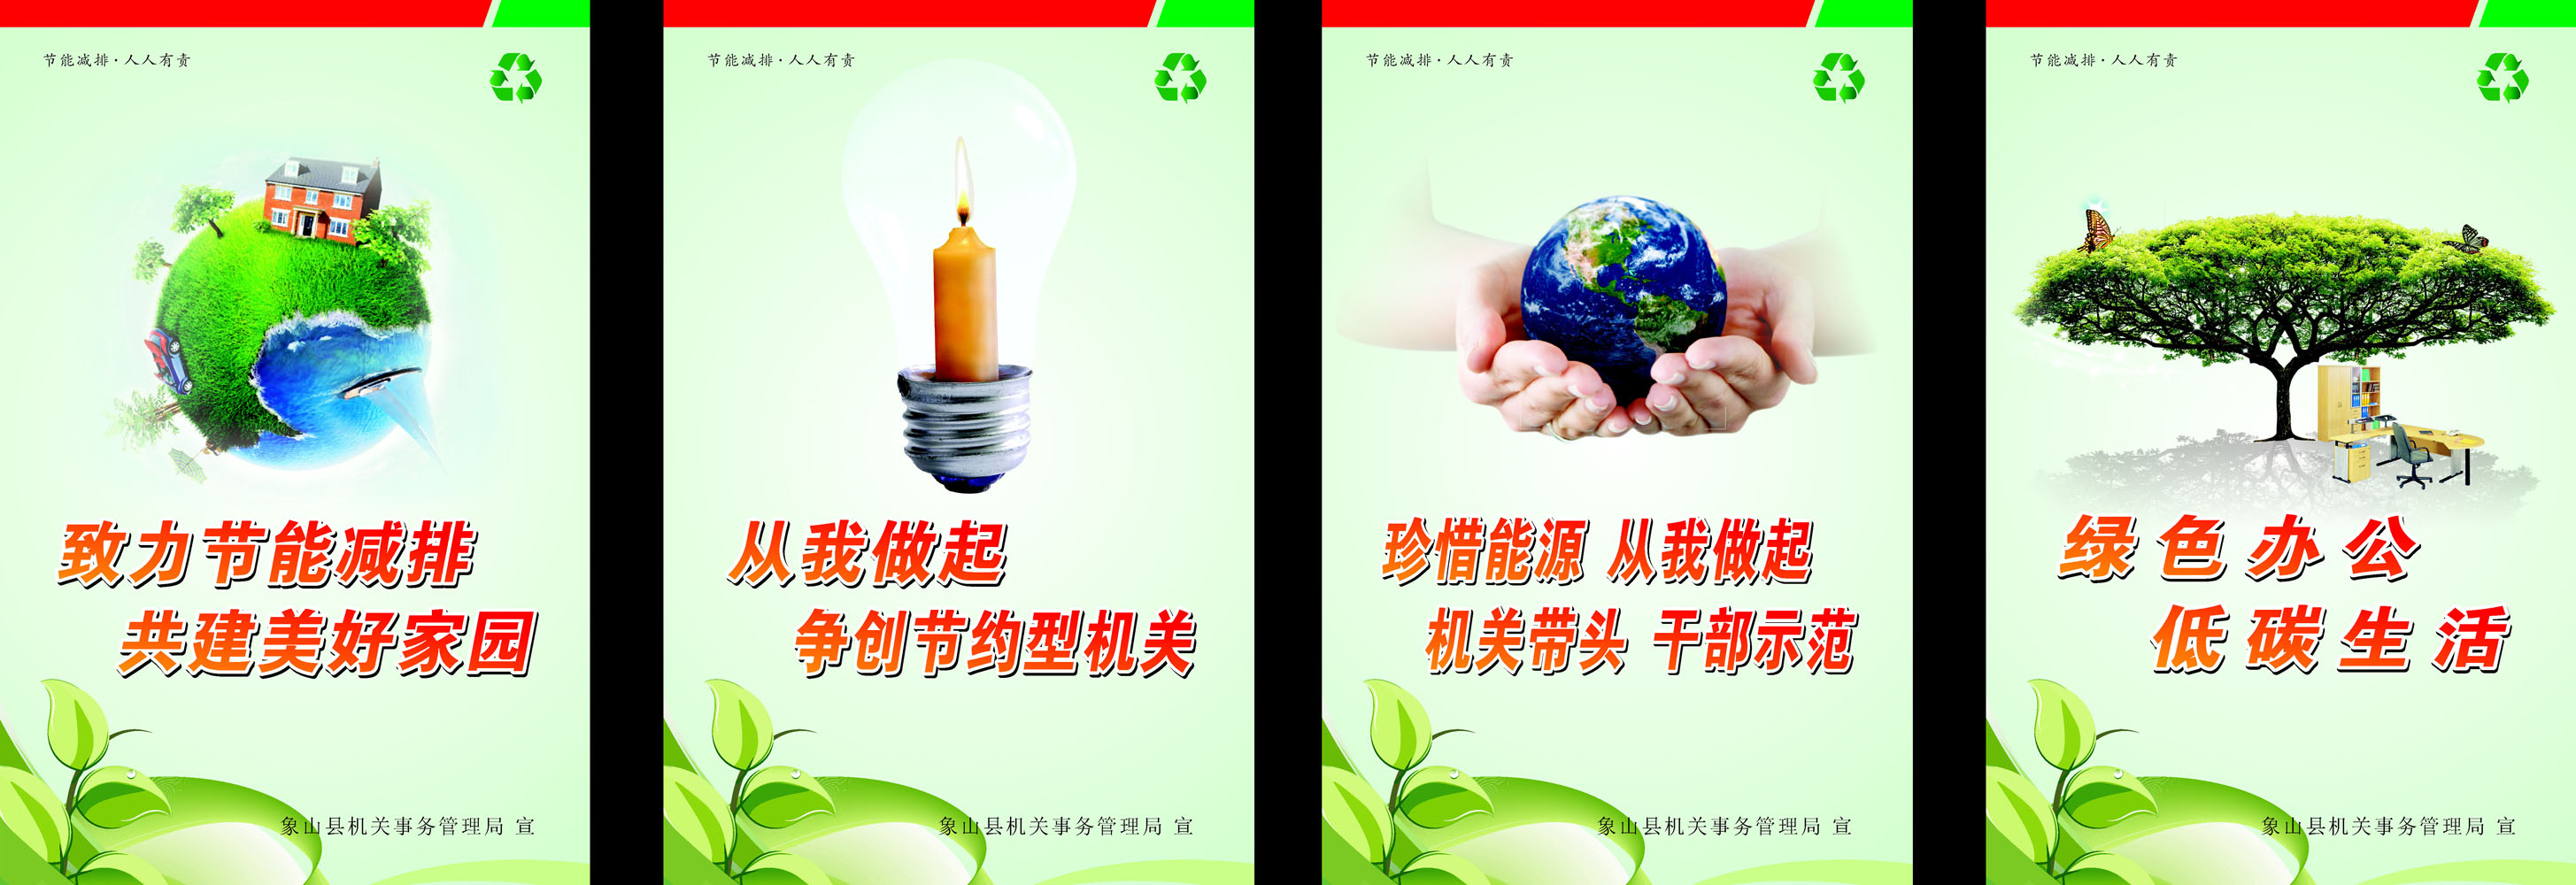 604贴纸印制海报展板素材852节能宣传语低碳生活节约用电保护环境